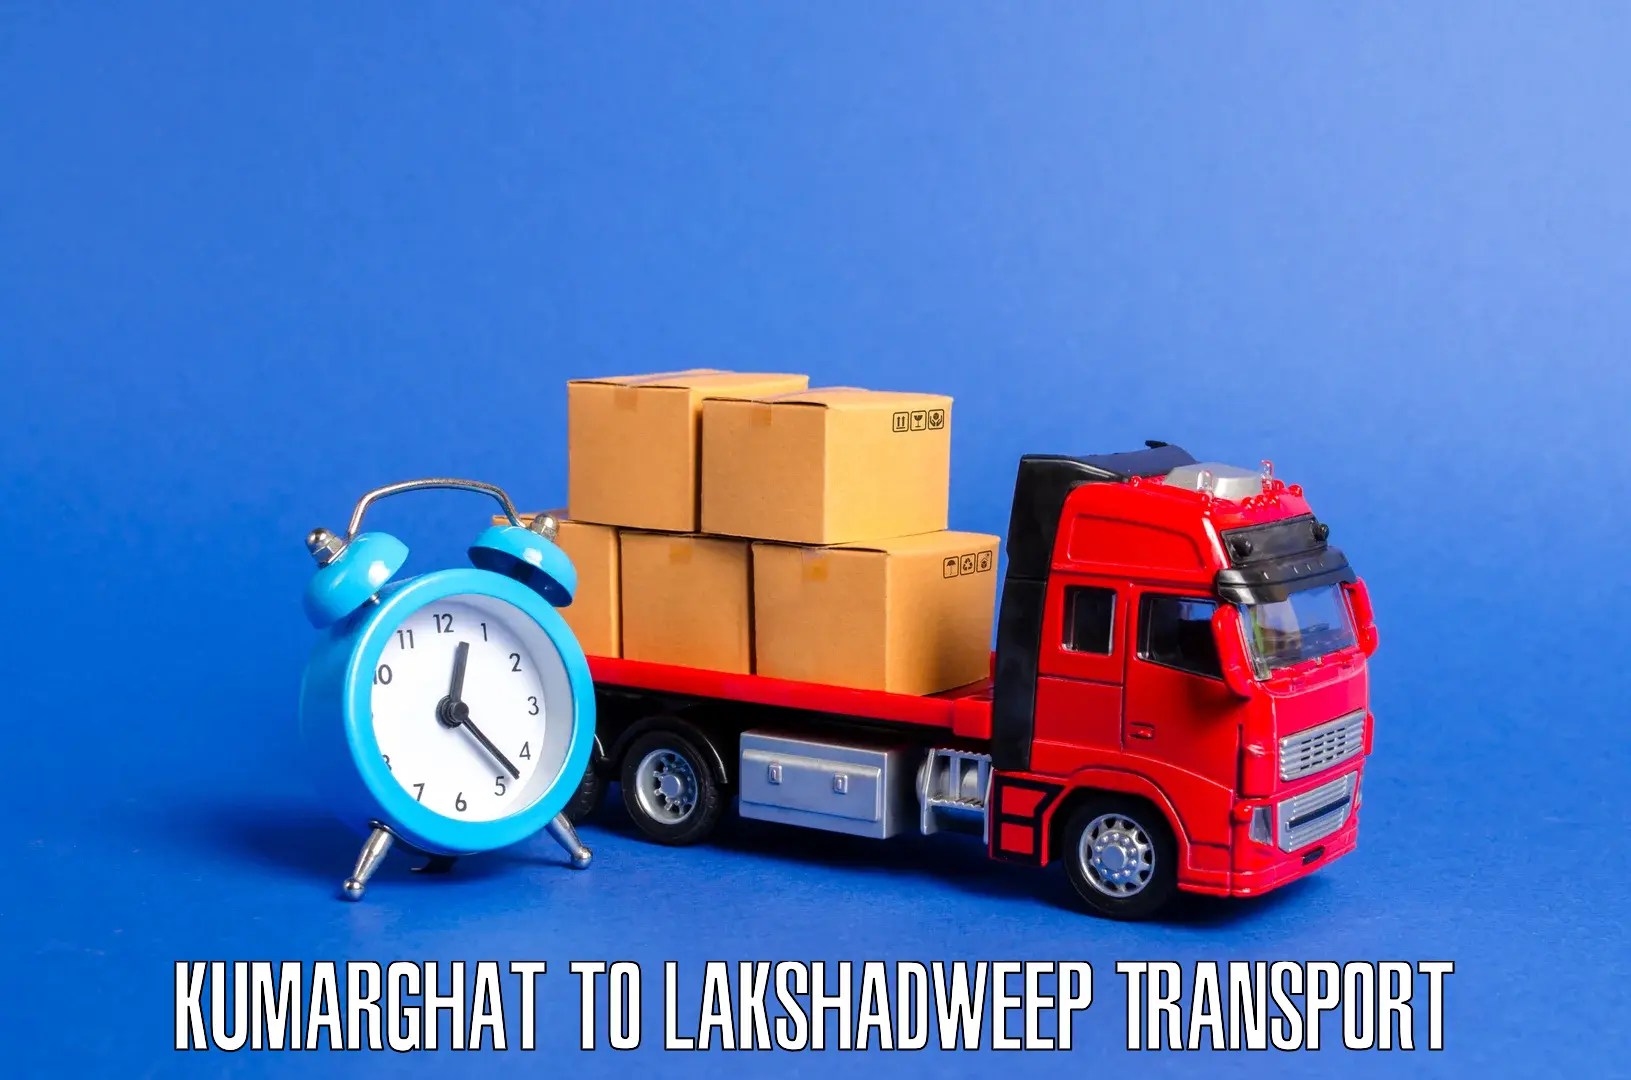 Intercity transport Kumarghat to Lakshadweep